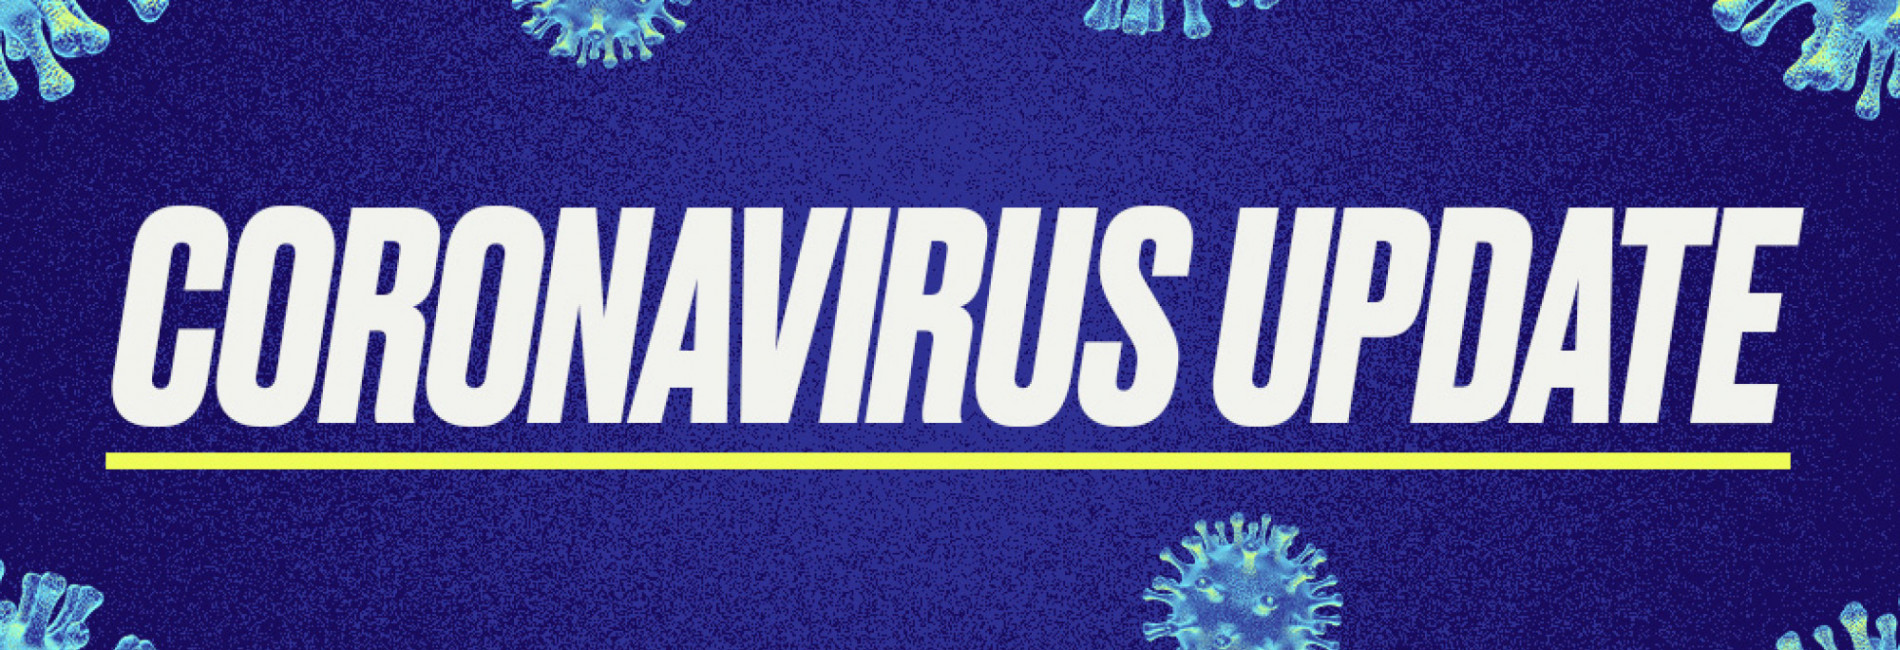 Coronavirus/Covid-19 Update